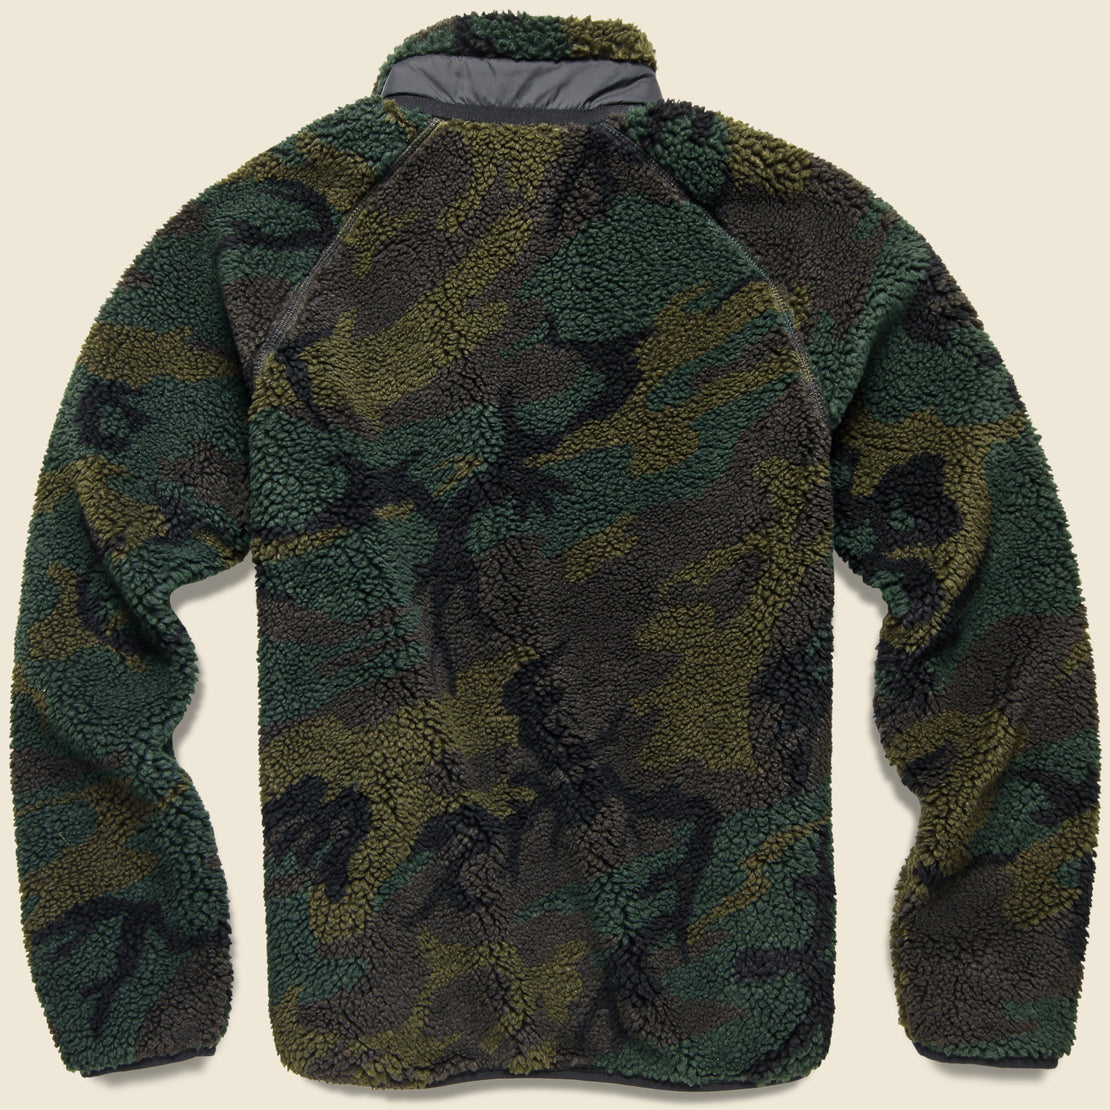 Prentis Fleece Jacket Liner - Camo Evergreen